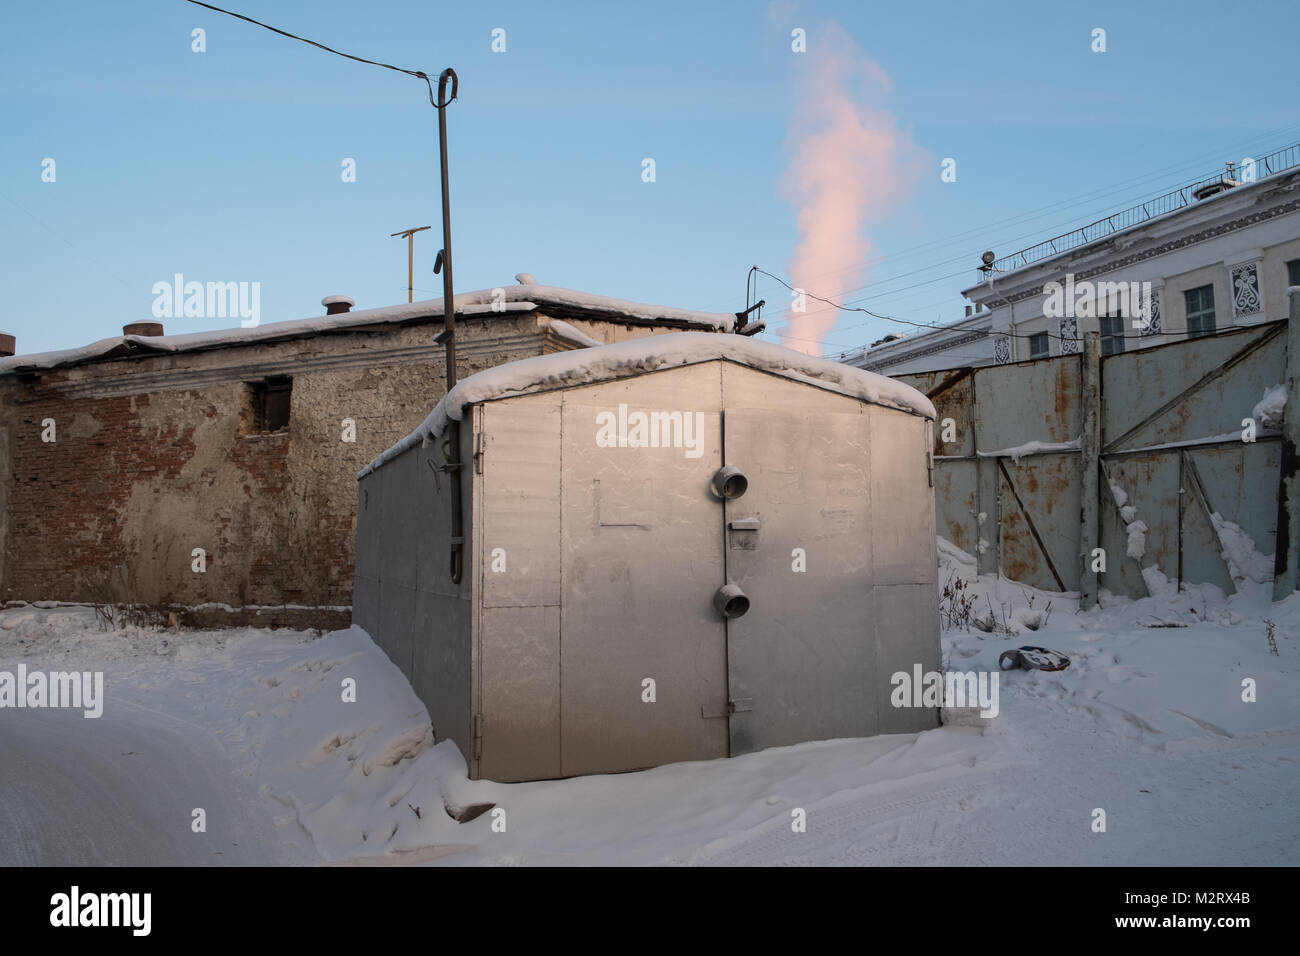 Un garage isolé et chauffé à Yakutsk en Sibérie. Iakoutsk est un important port sur le fleuve Lena. Il est desservi par le l'aéroport de Iakoutsk ainsi que le Banque D'Images